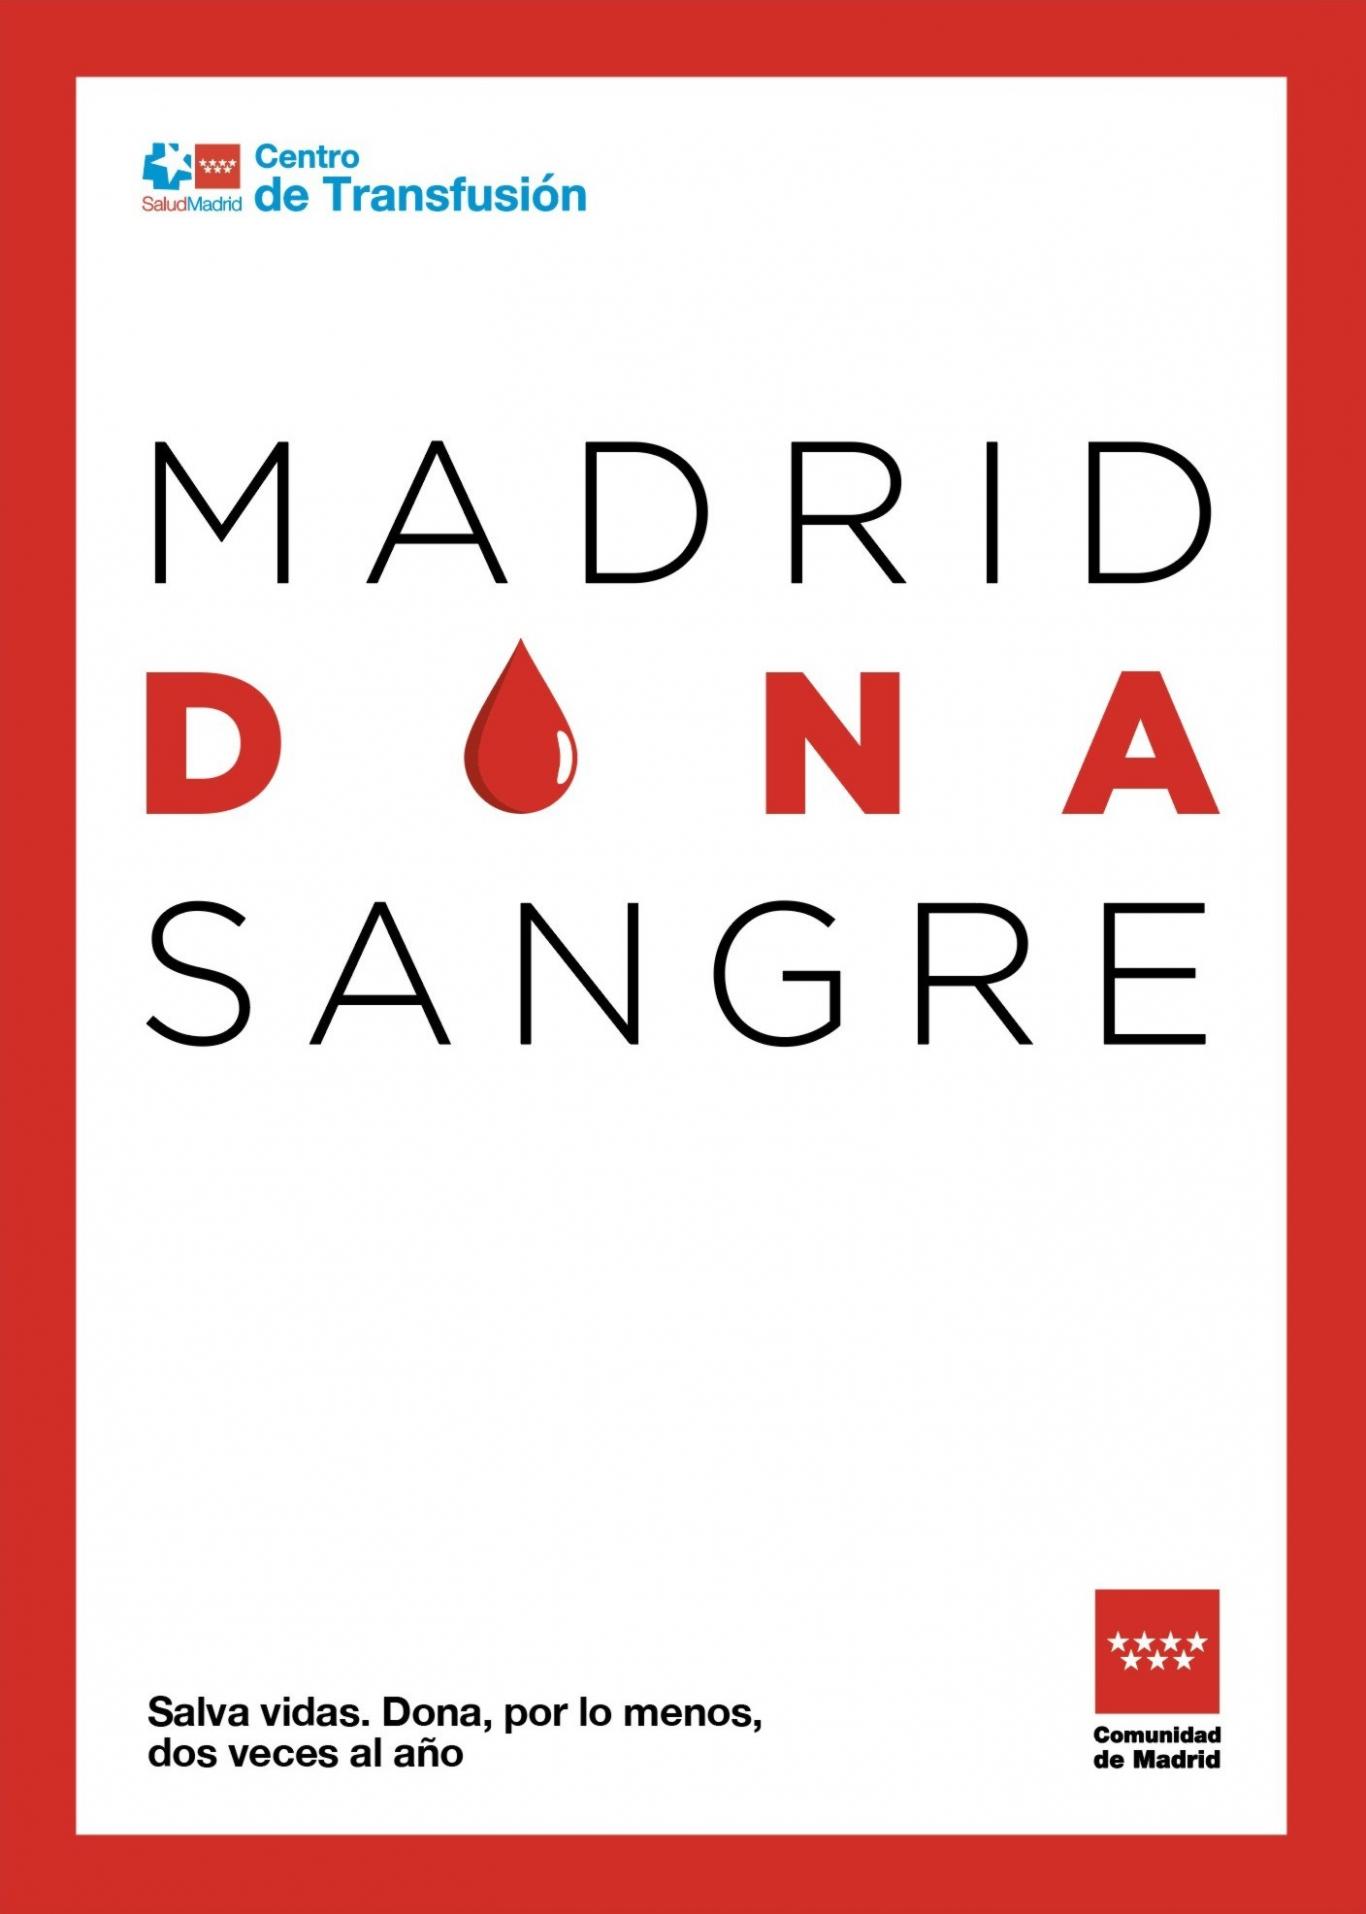 imagen maratones de donación de sangre otoño 23